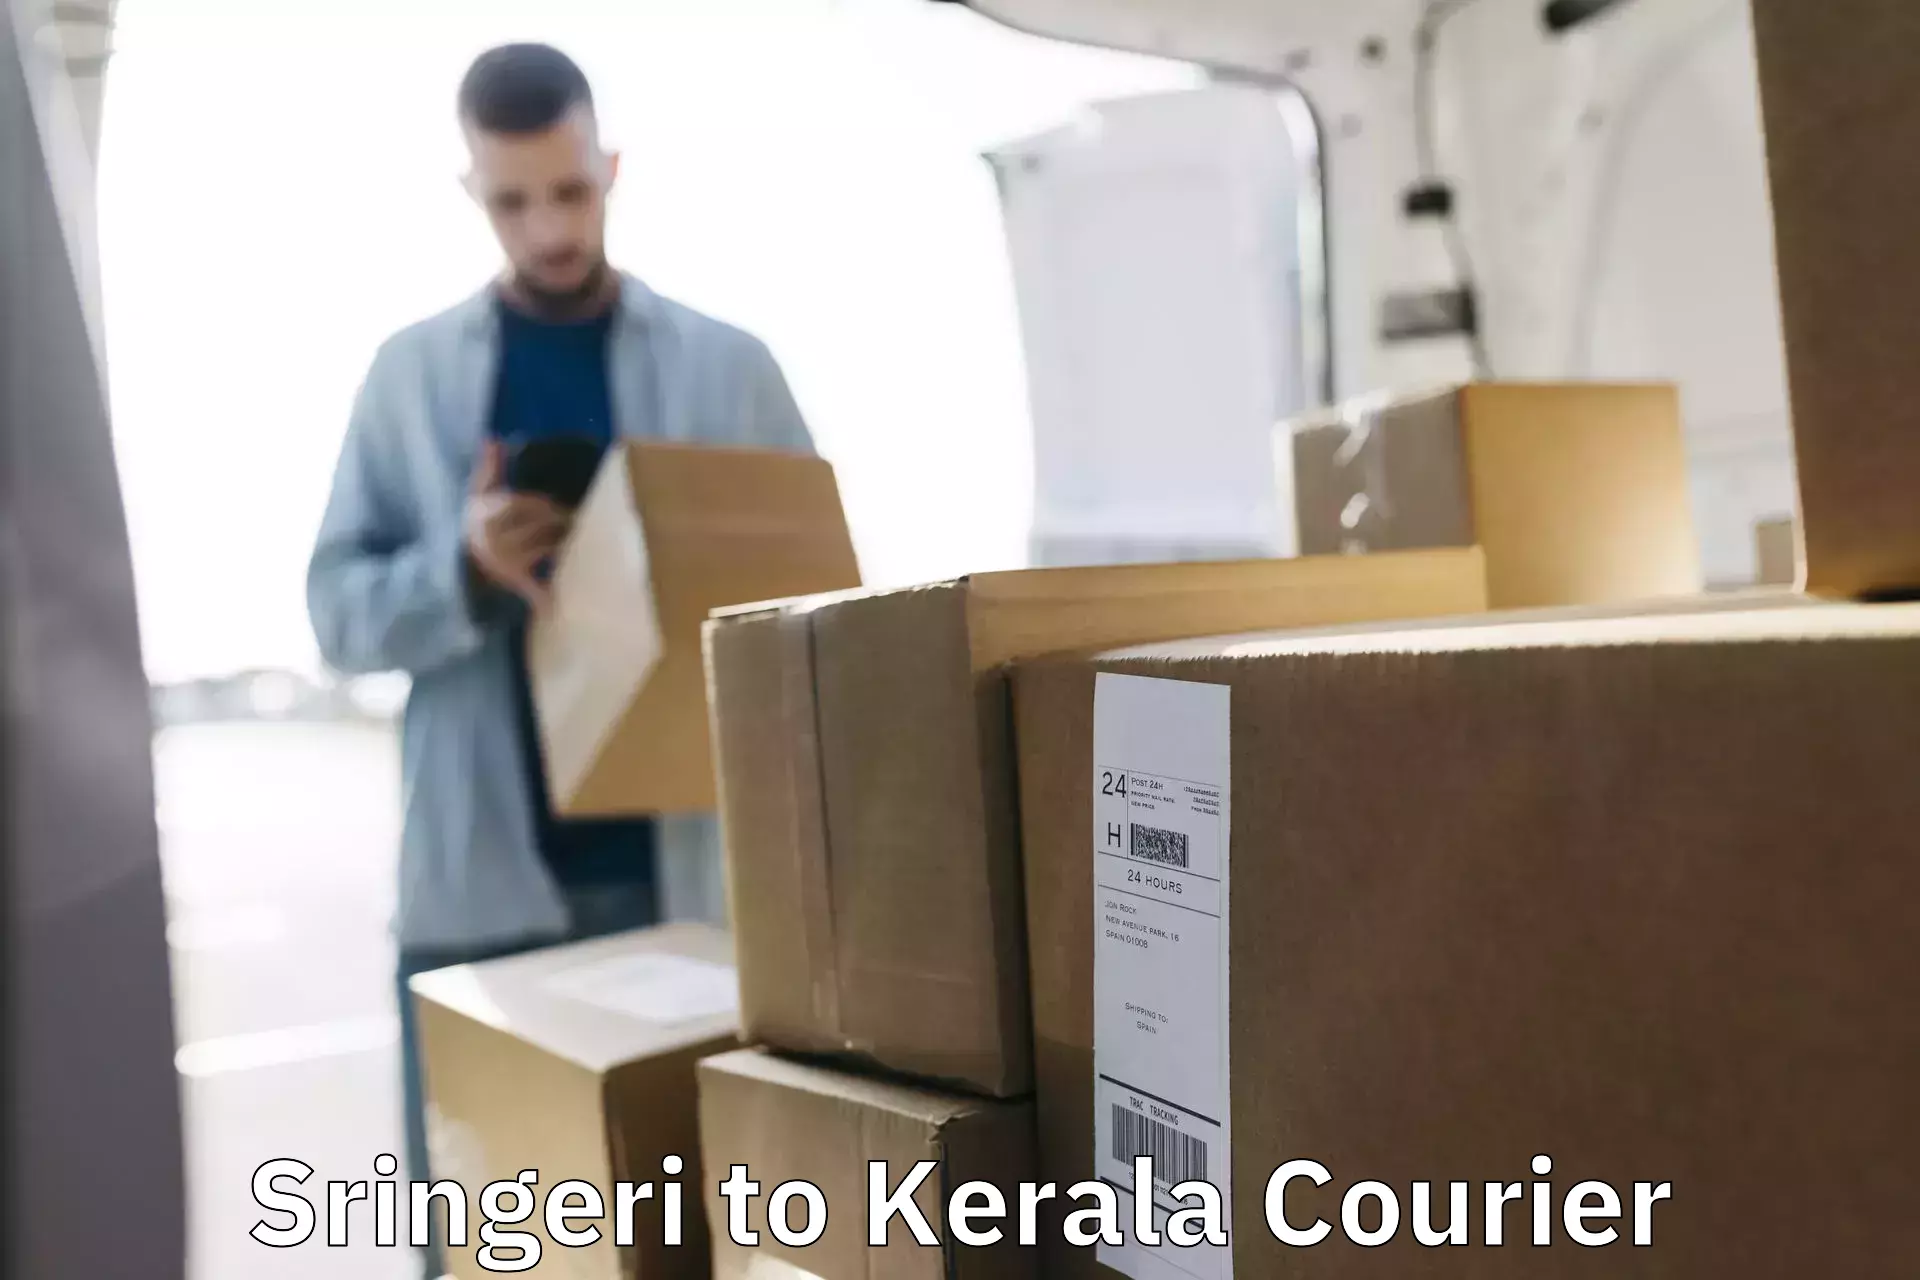 Local delivery service Sringeri to Kerala